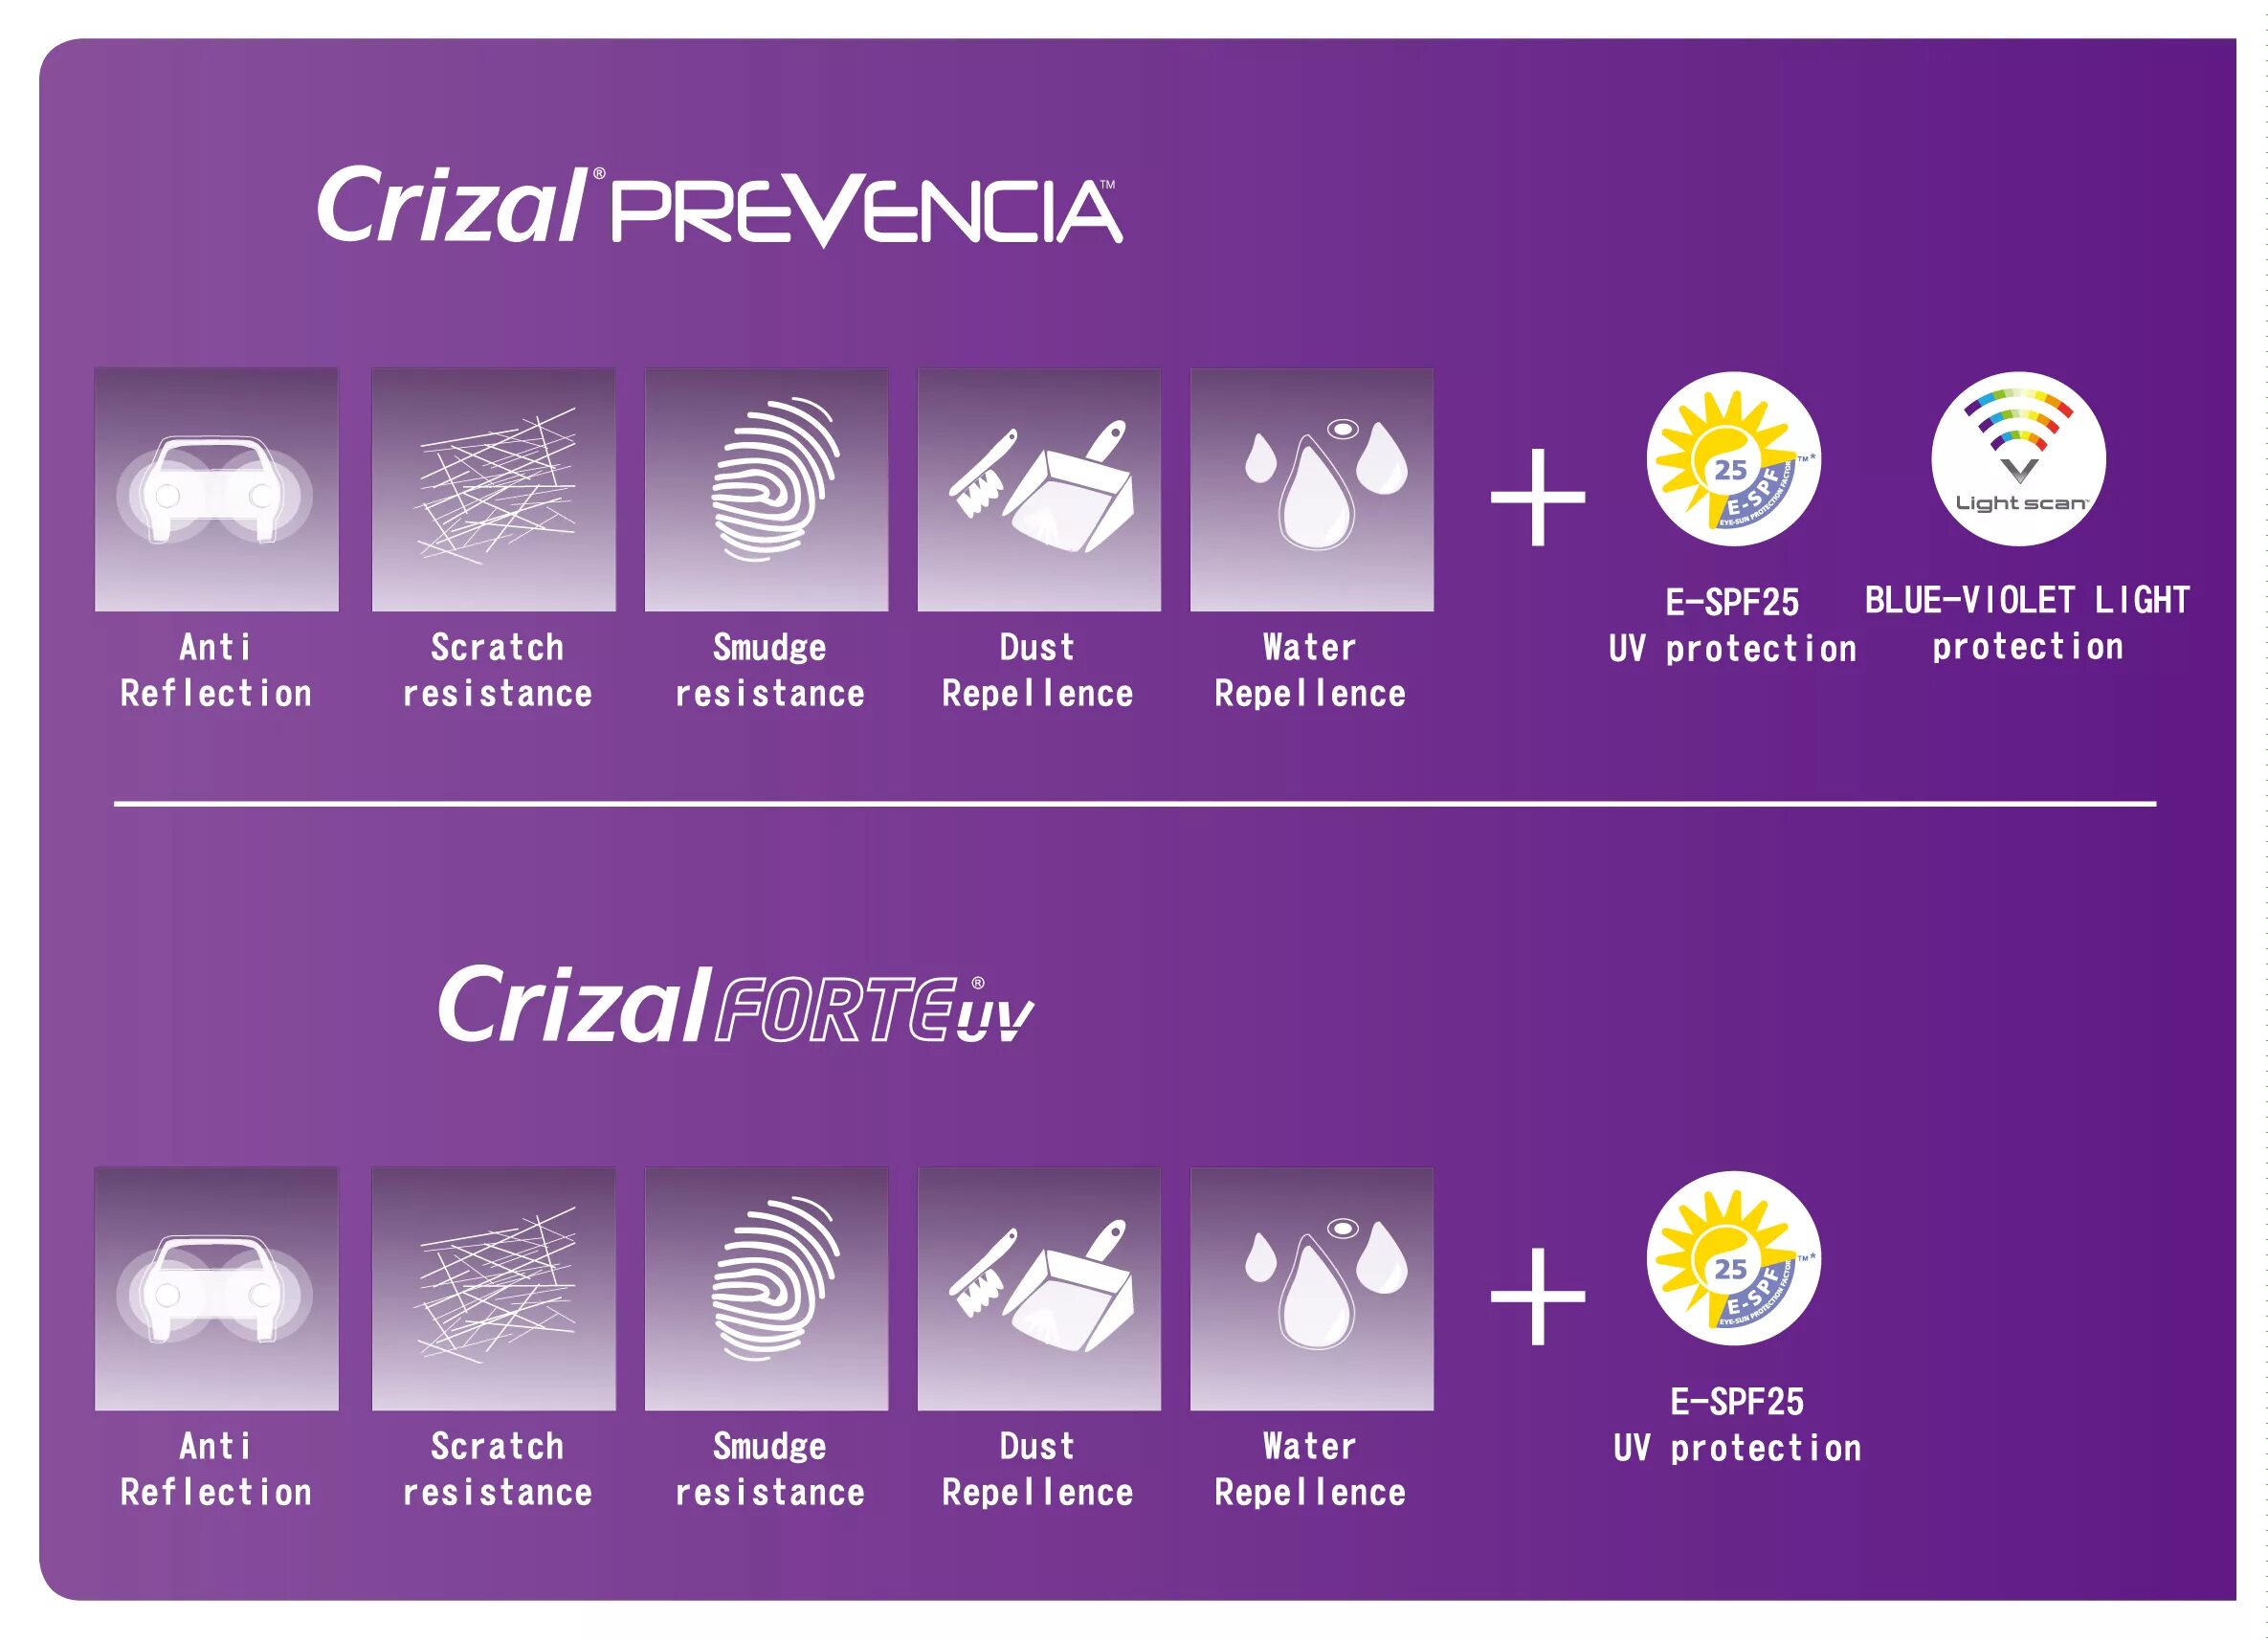 Crizal easy. Prevencia линзы. Эссилор линзы превенция. Линзы Crizal prevencia. Покрытие Crizal prevencia.